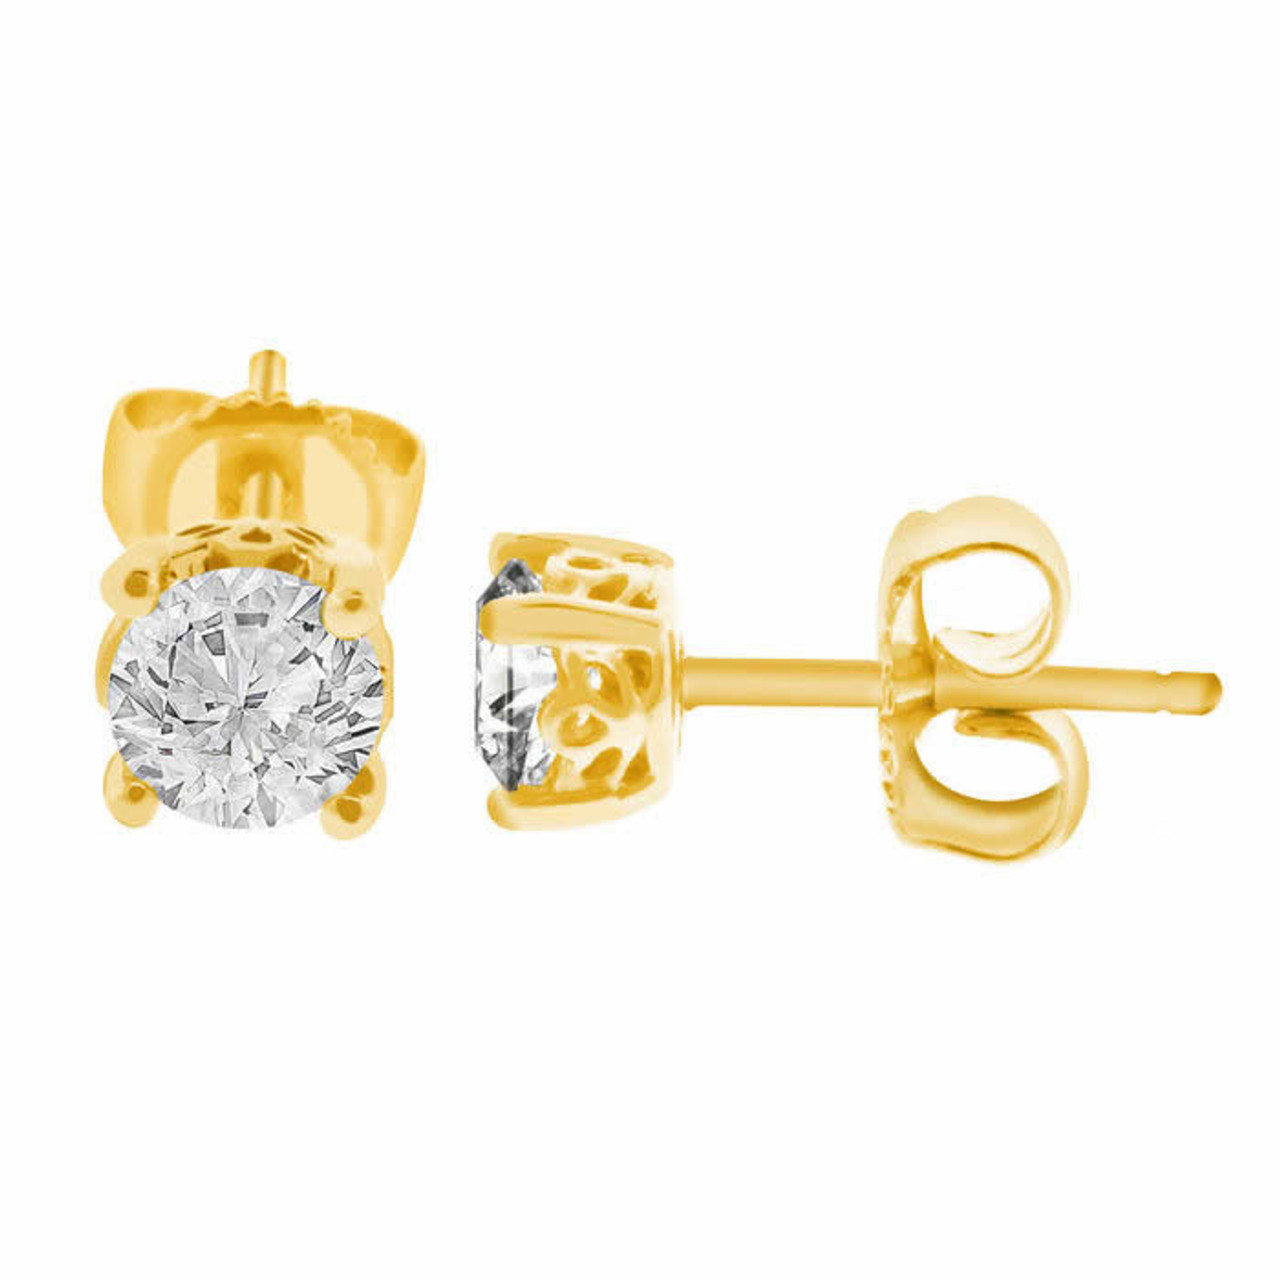 Heavy Golden American Diamond Earrings